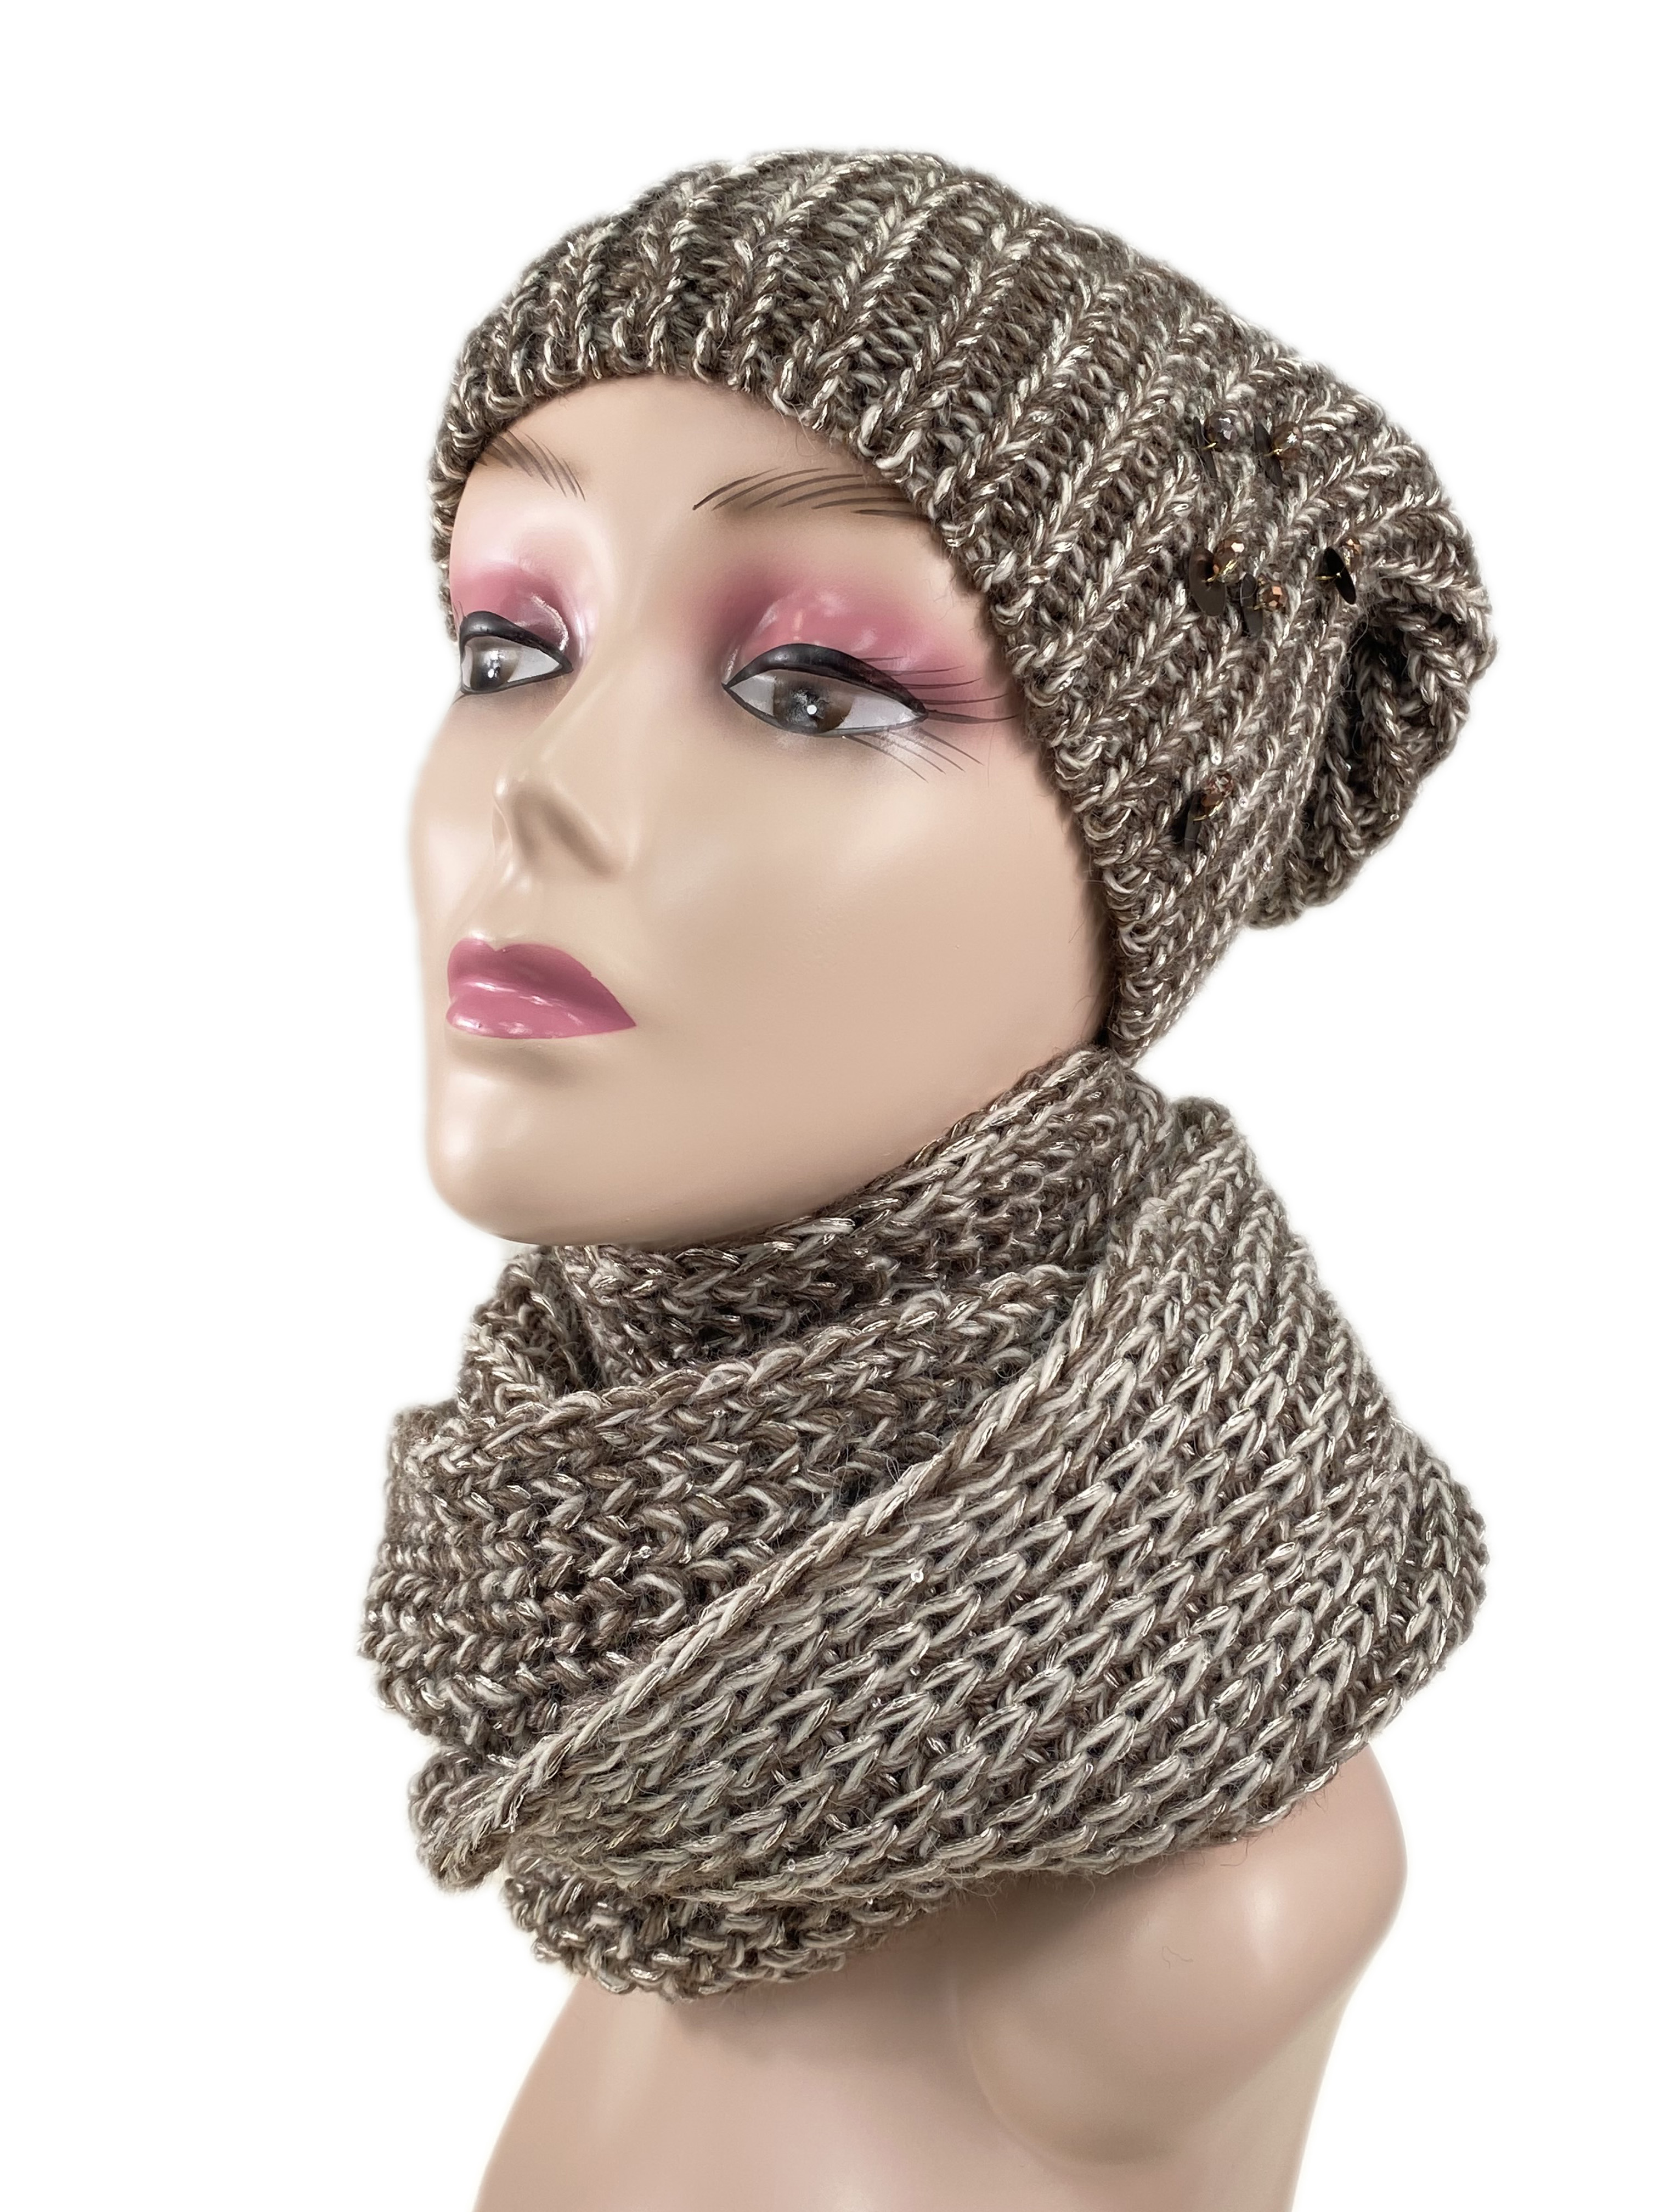 Комплект женская шапка и шарф, цвет бело-коричневый